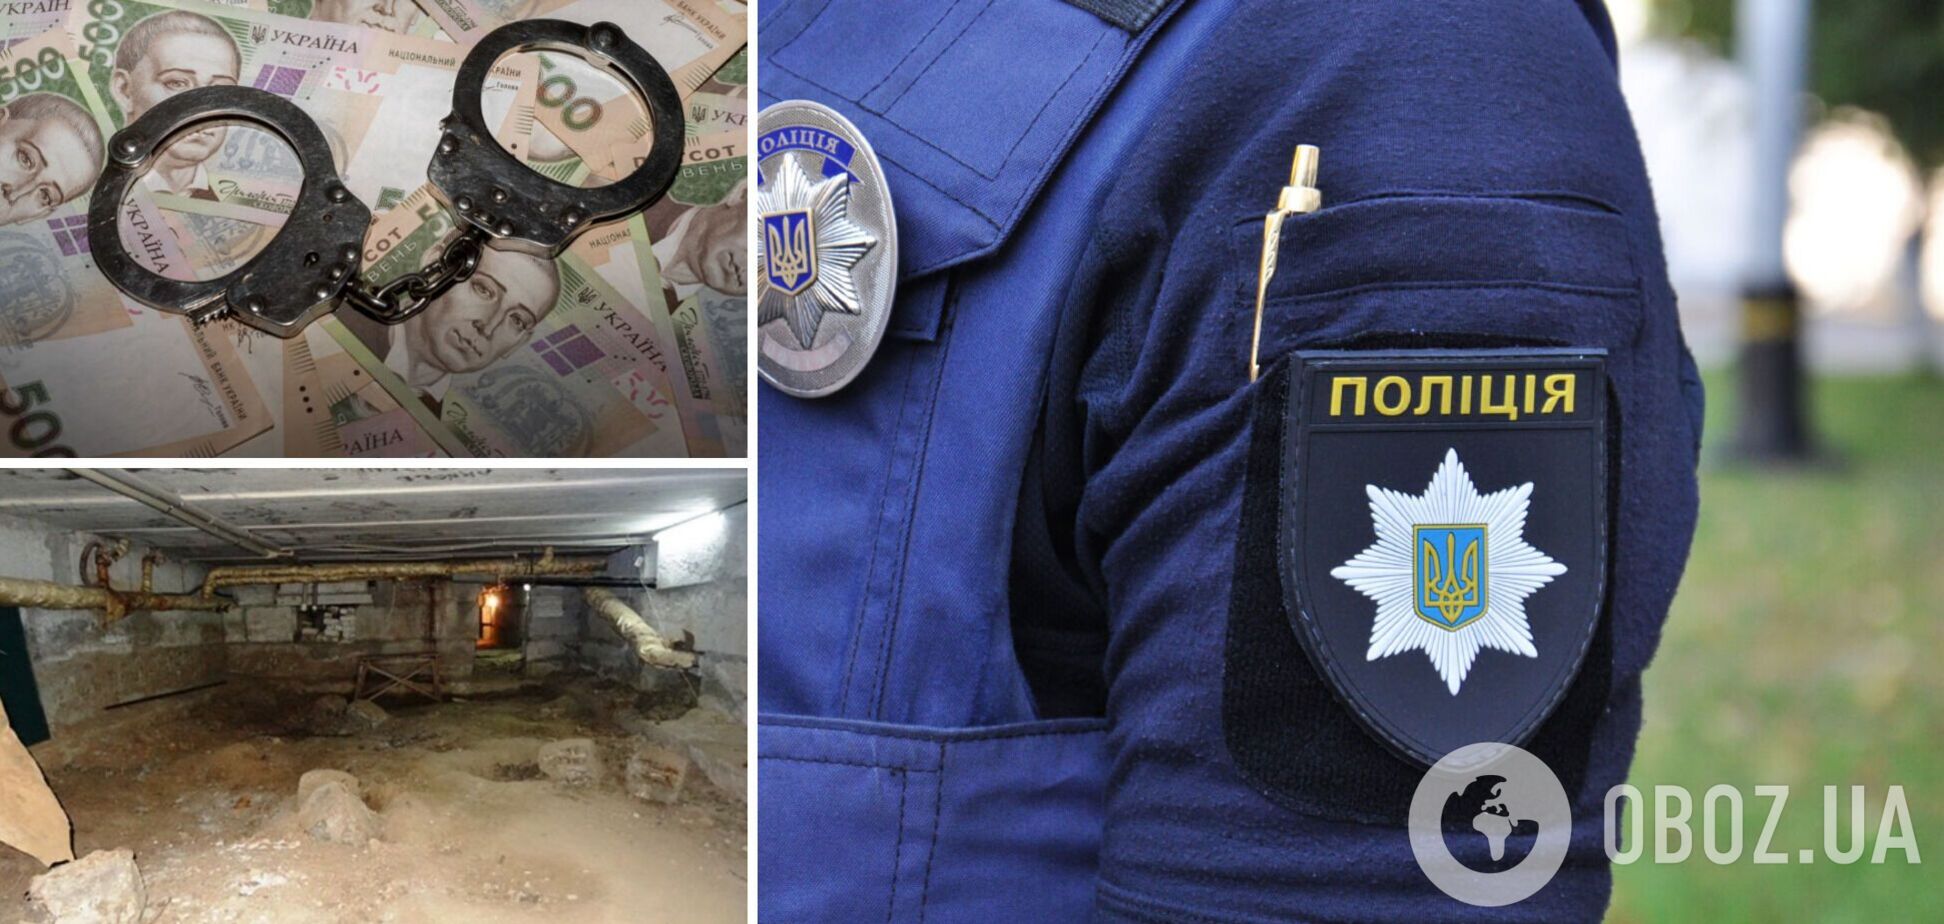 В Харькове мужчина украл миллион гривен у женщины, которая укрывалась от обстрела в подвале